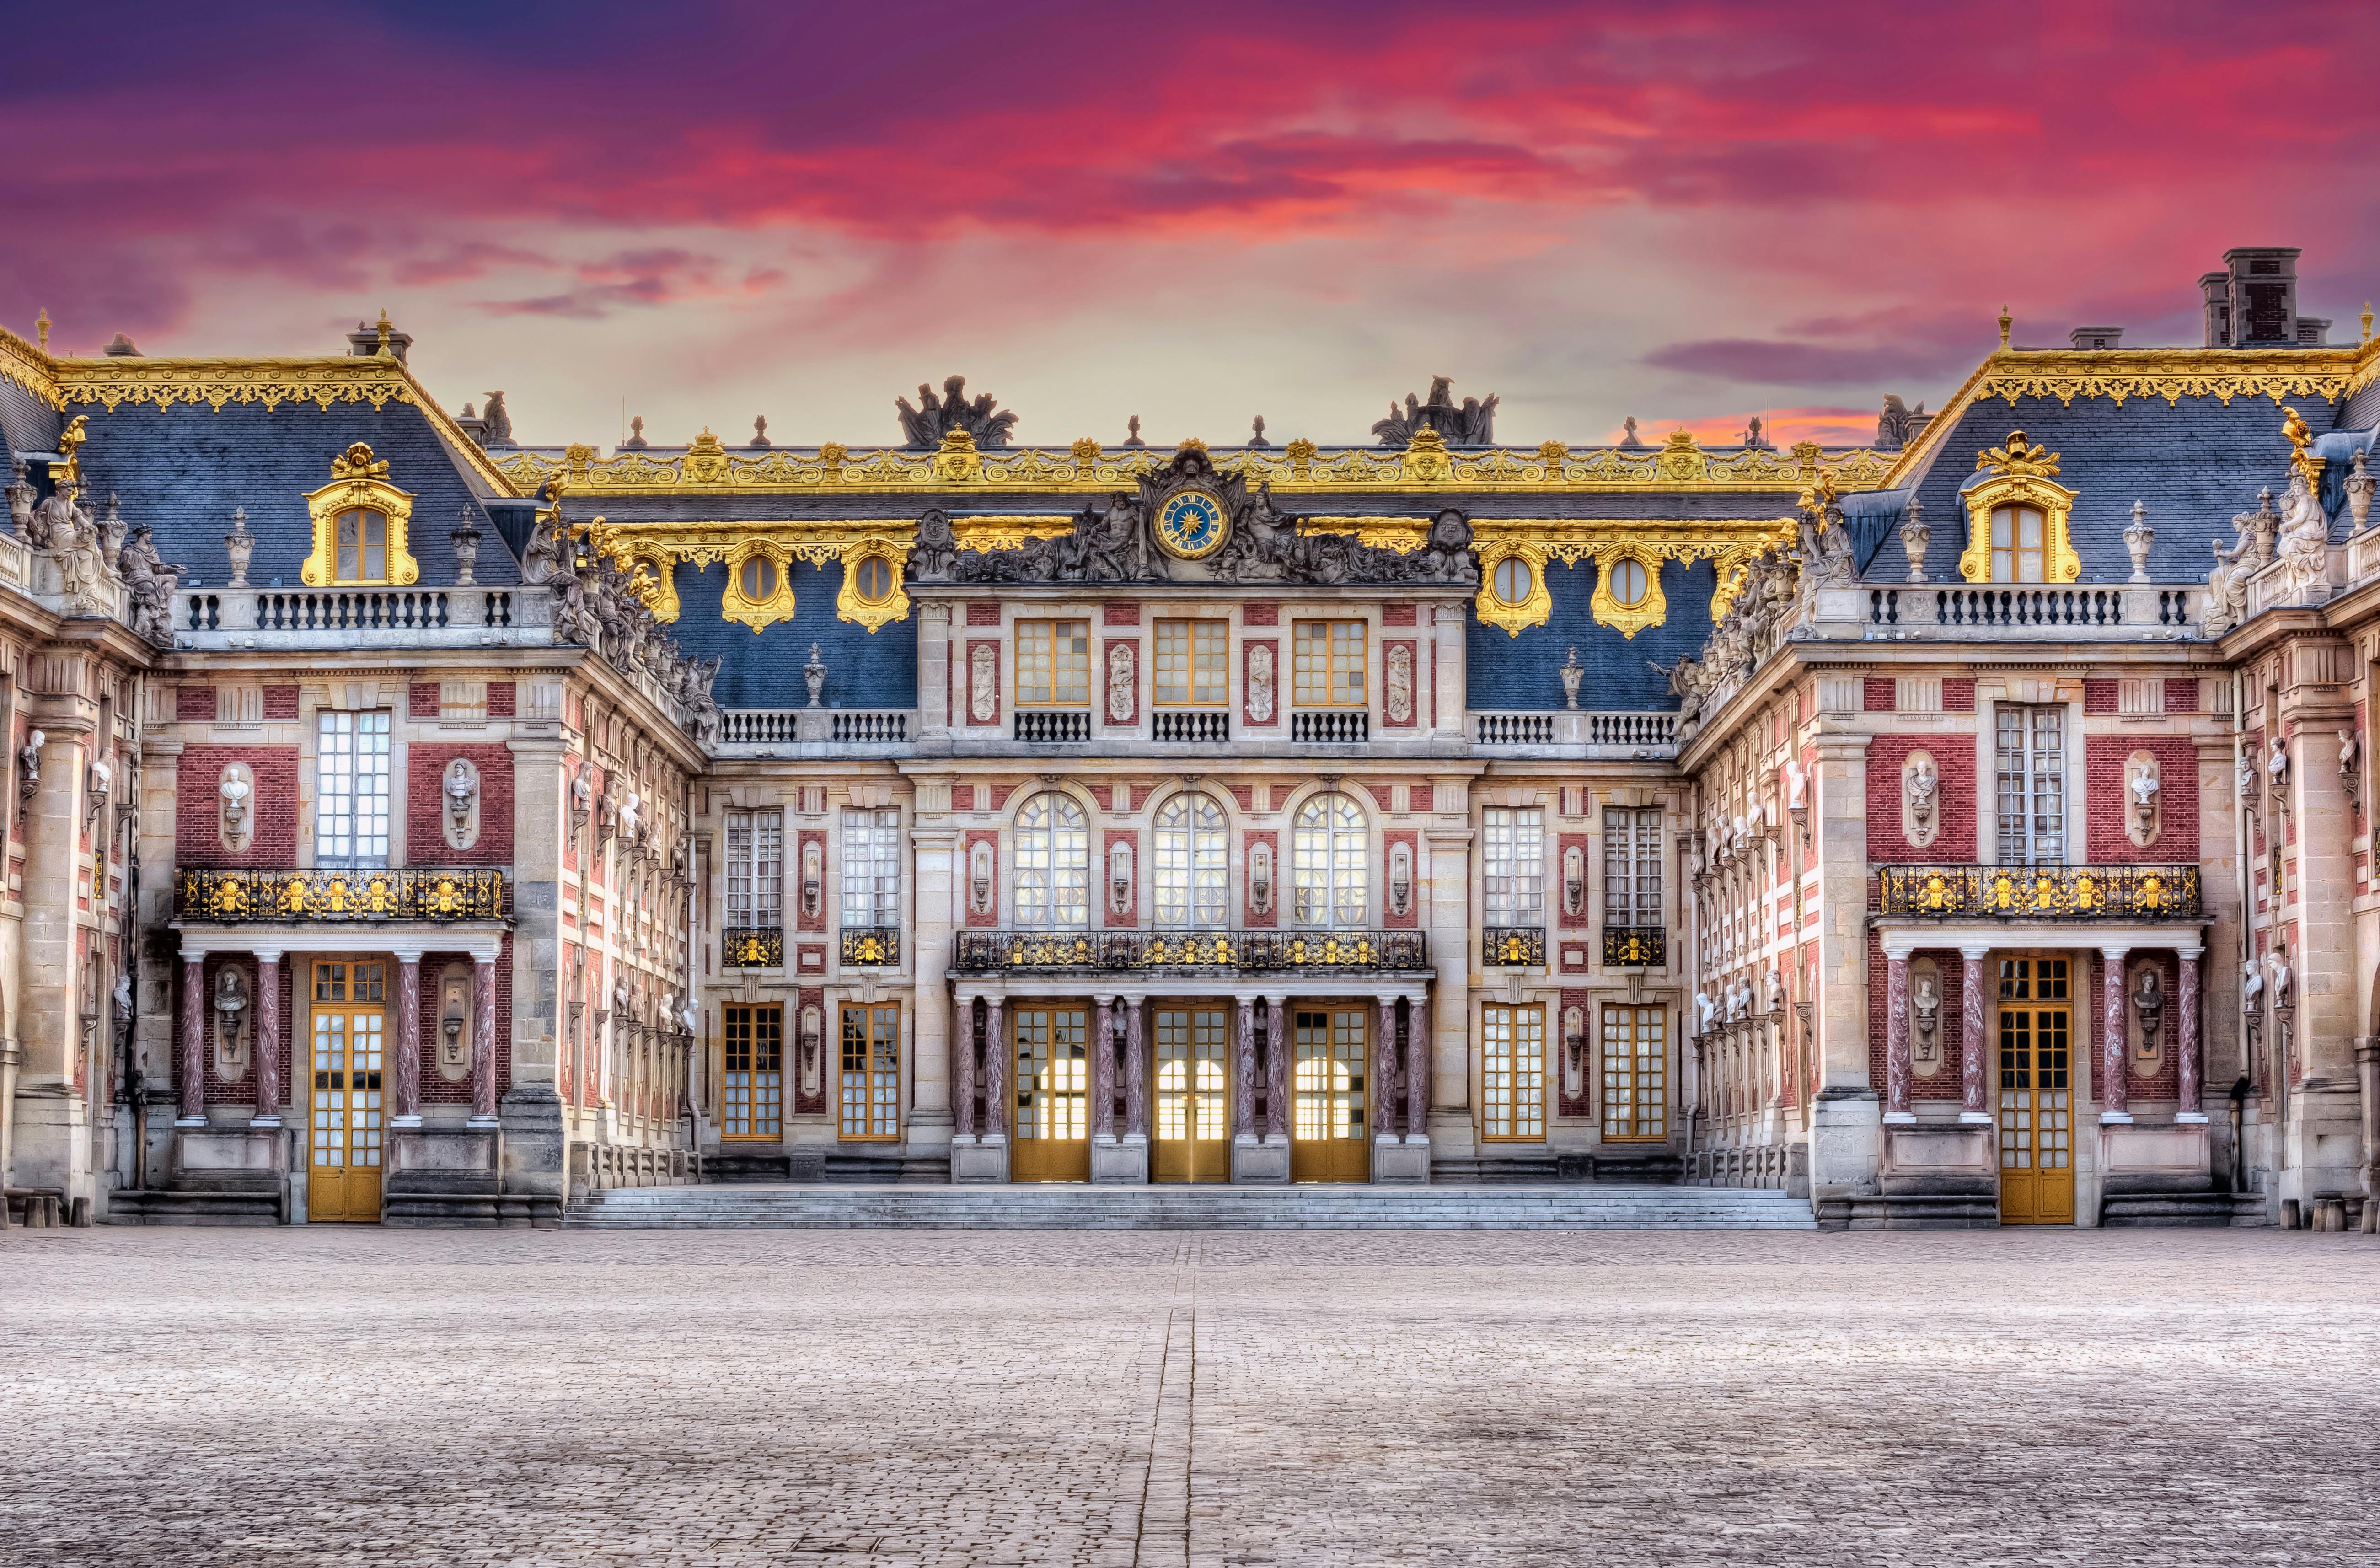 Visita guiada ao Palácio de Versalhes saindo de Paris, incluindo shows de jardins